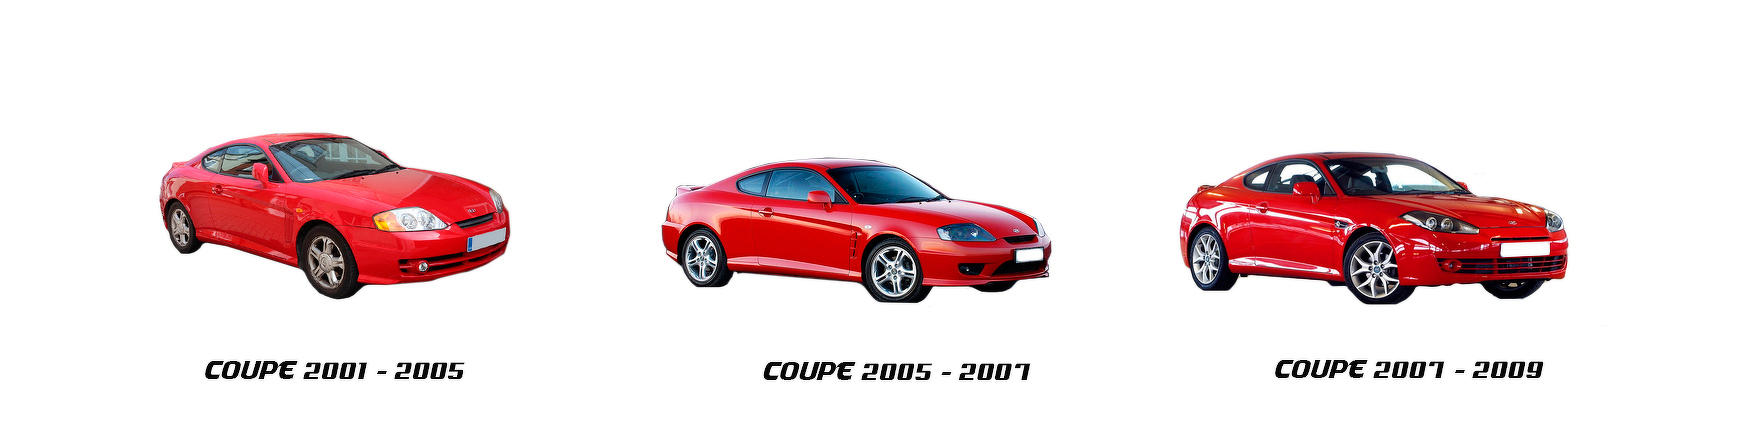 hyundai coupe 2001 2002 2003 2004